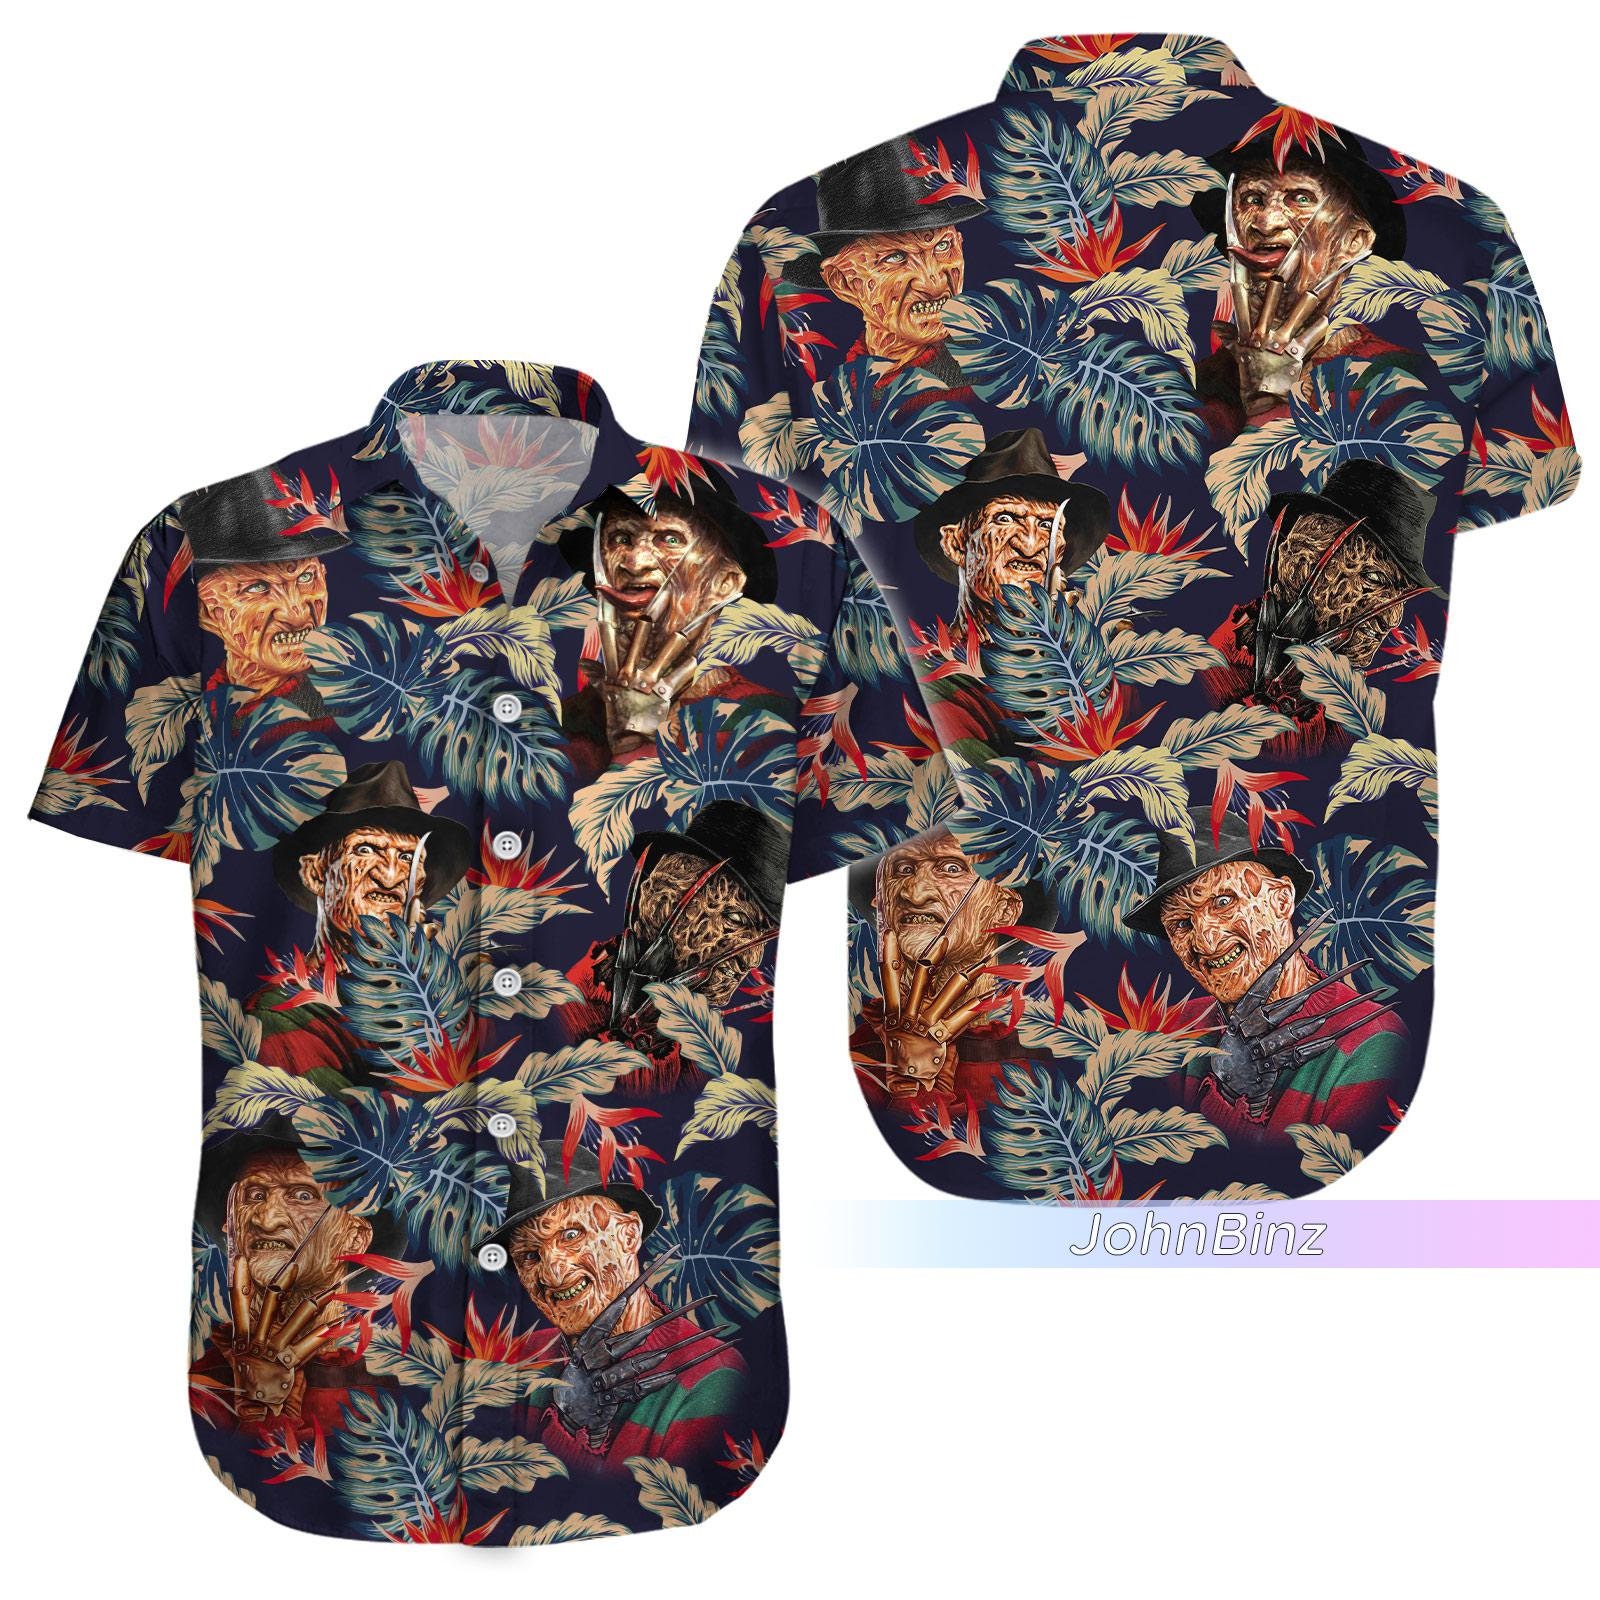 Freddy Krueger Shirt, Freddy Krueger Hawaiian Shirt, Horror Movie Shirt